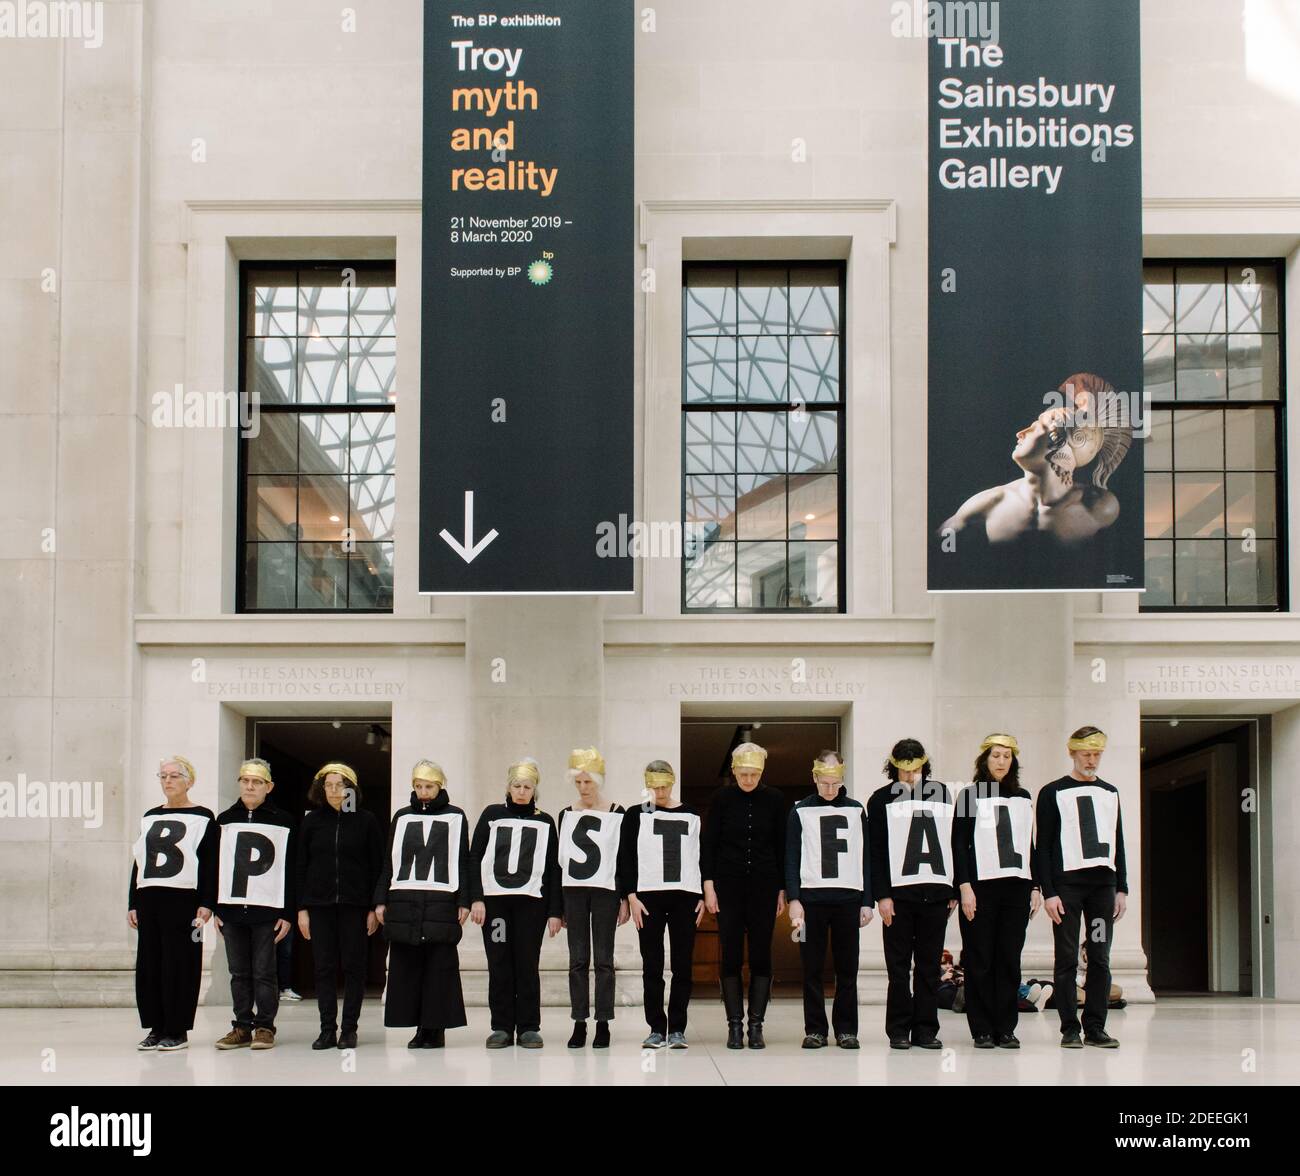 Londra, Regno Unito - 8 febbraio 2020: BP deve cadere, la ribellione estinzione protesta fuori dal British Museum contro la crisi climatica e colonialis Foto Stock